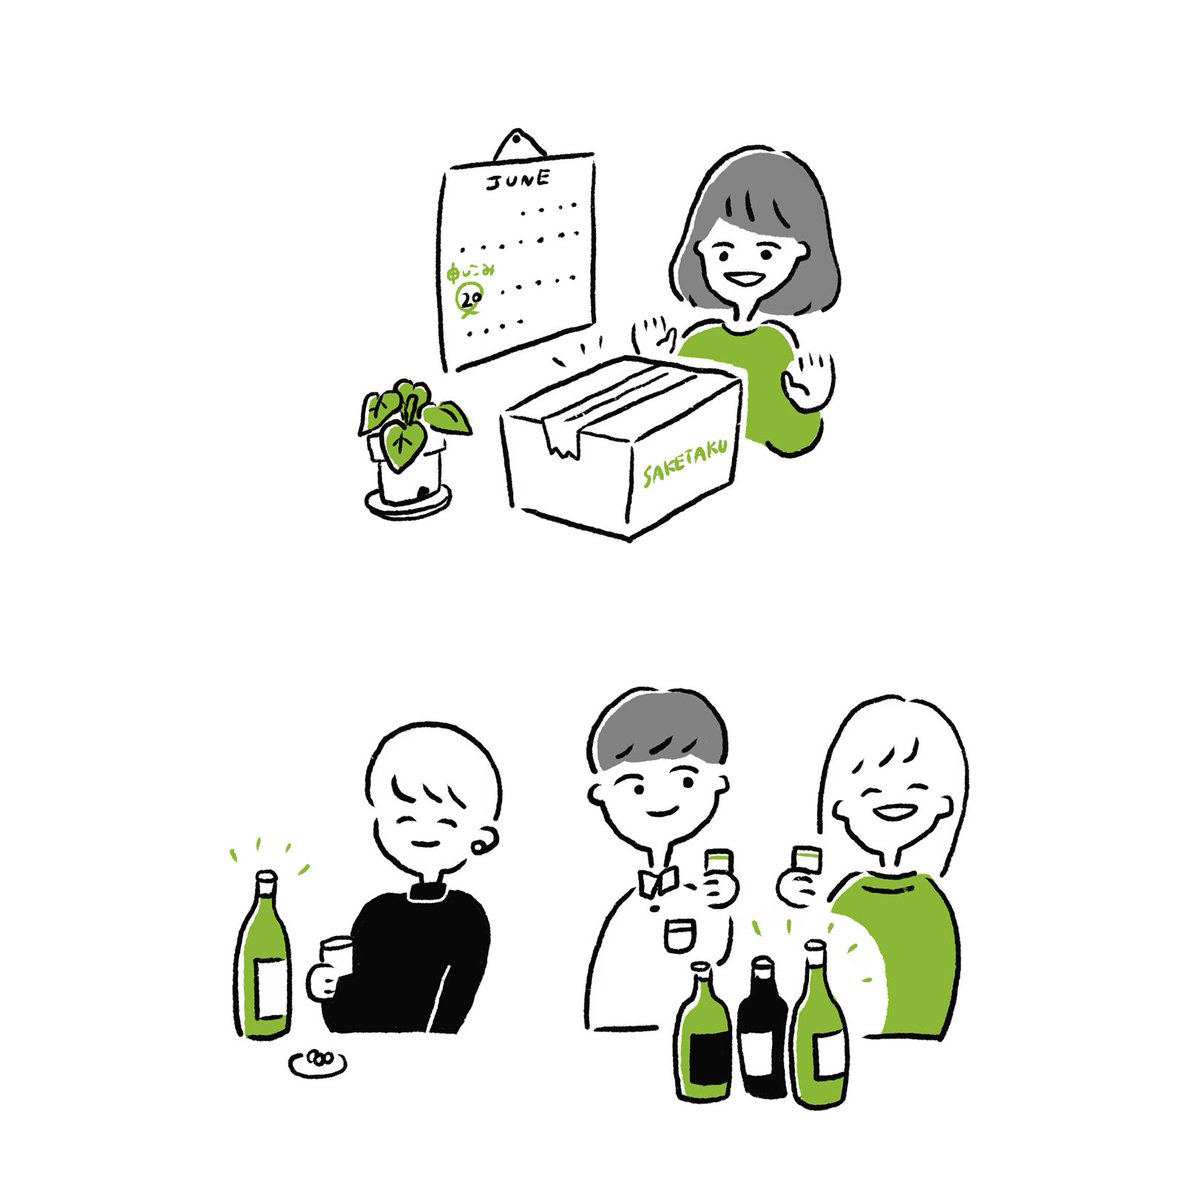 美味しい日本酒の定期便 @saketaku_san さんのサイトイラストを描かせていただききました!?
月に1度、セレクトされた日本酒と、美味しく楽しく呑めるグッズをまとめて送ってくれる、素敵なサービスです☺️サービスの説明や、楽しんでいる人たちを描きました! #saketaku
https://t.co/QAJY9bv8px 